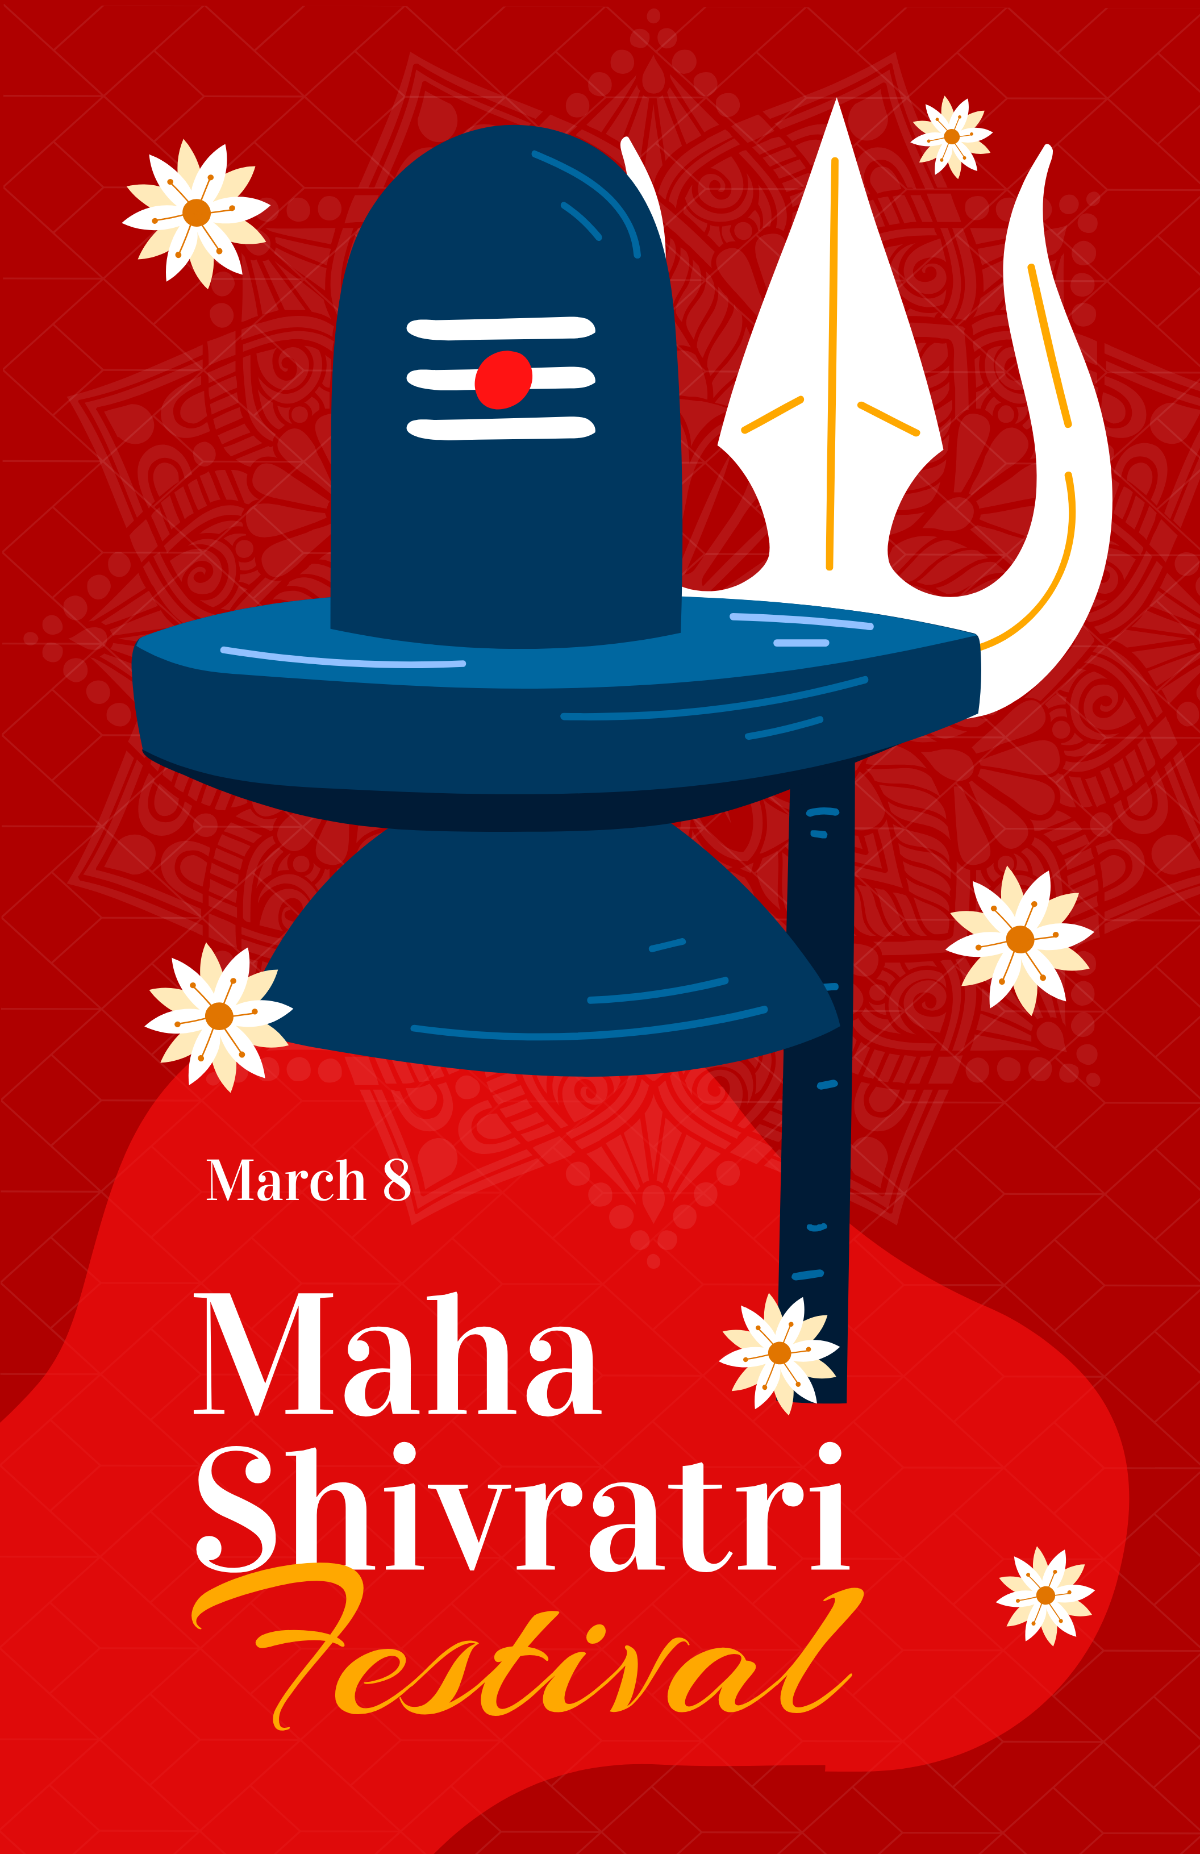 Free Maha Shivratri Festival Poster Template